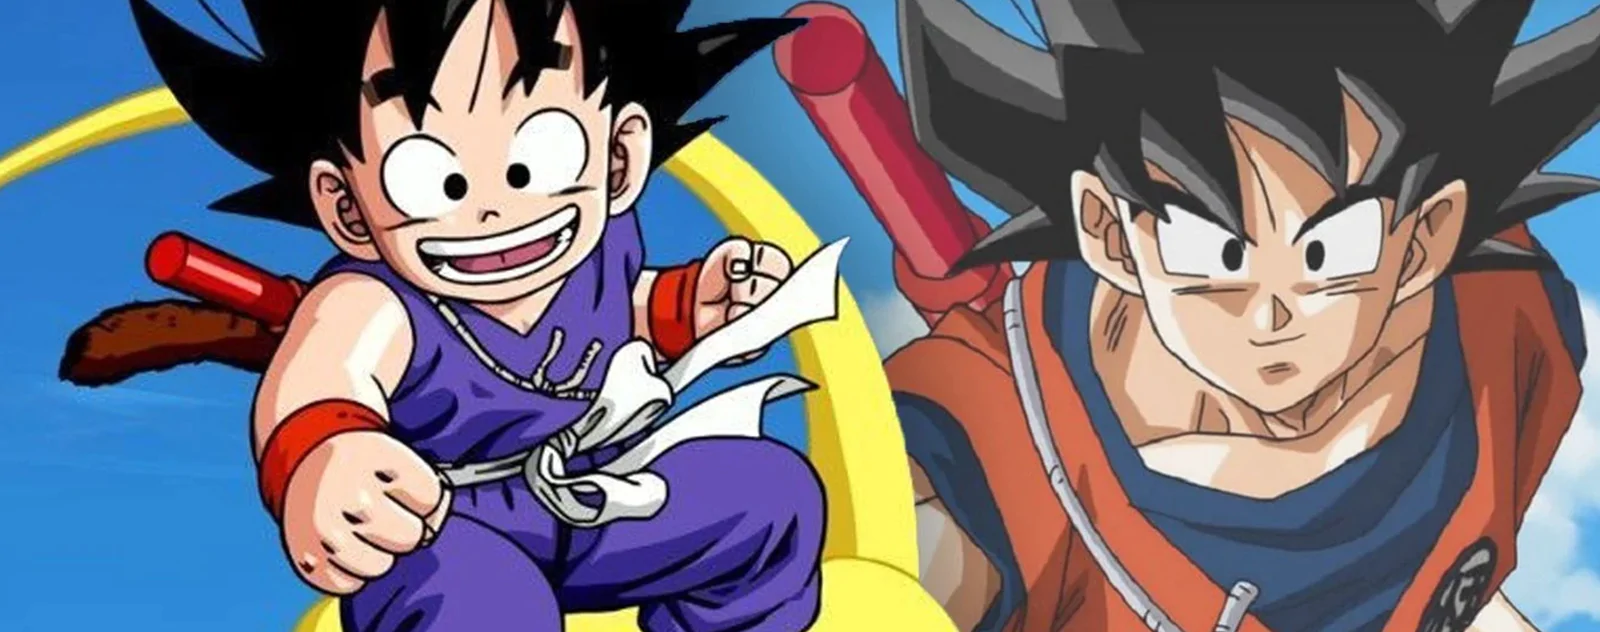 Kid Goku and Adult Goku